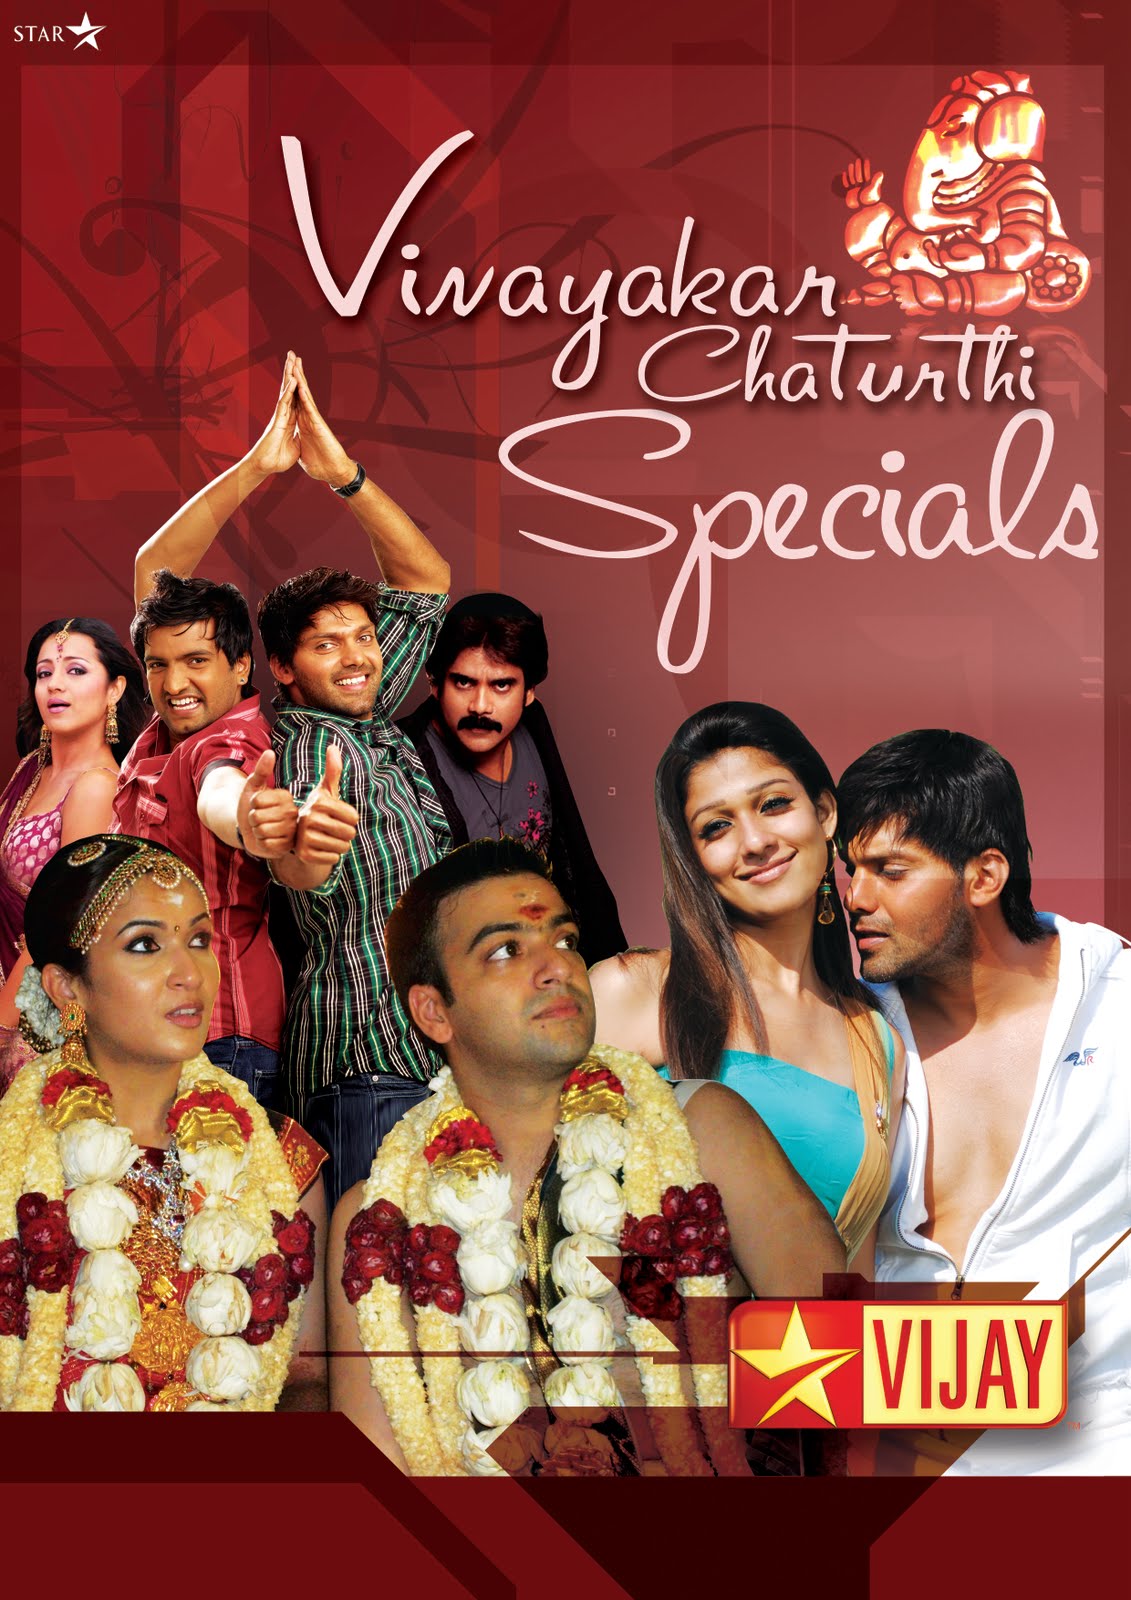 Vijay Programs Today